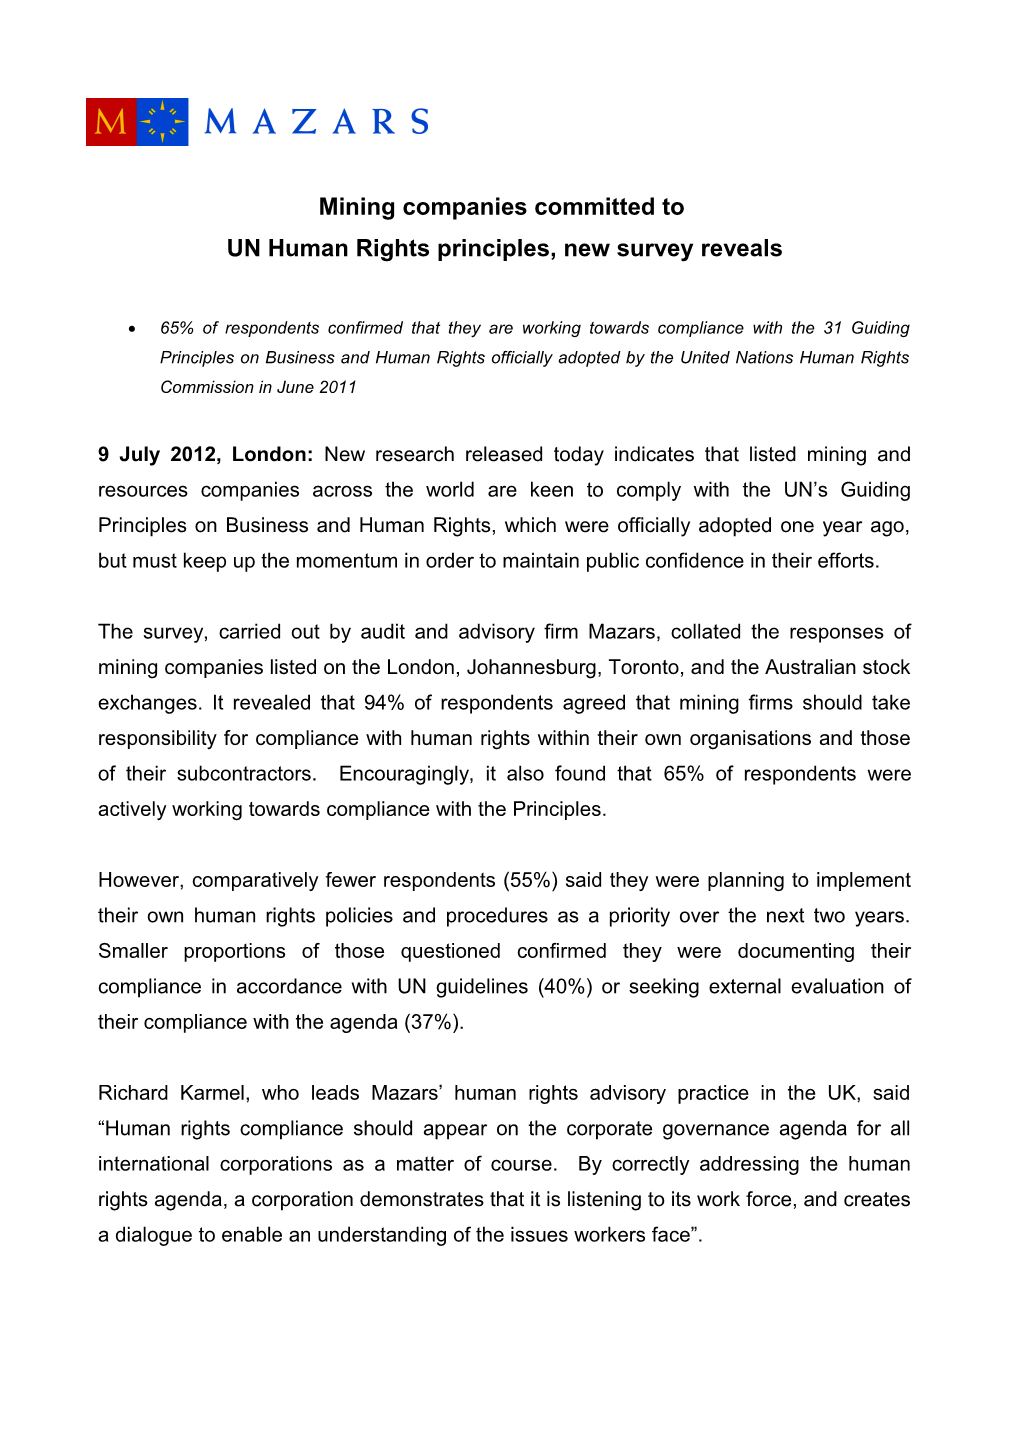 UN Human Rights Principles, New Survey Reveals